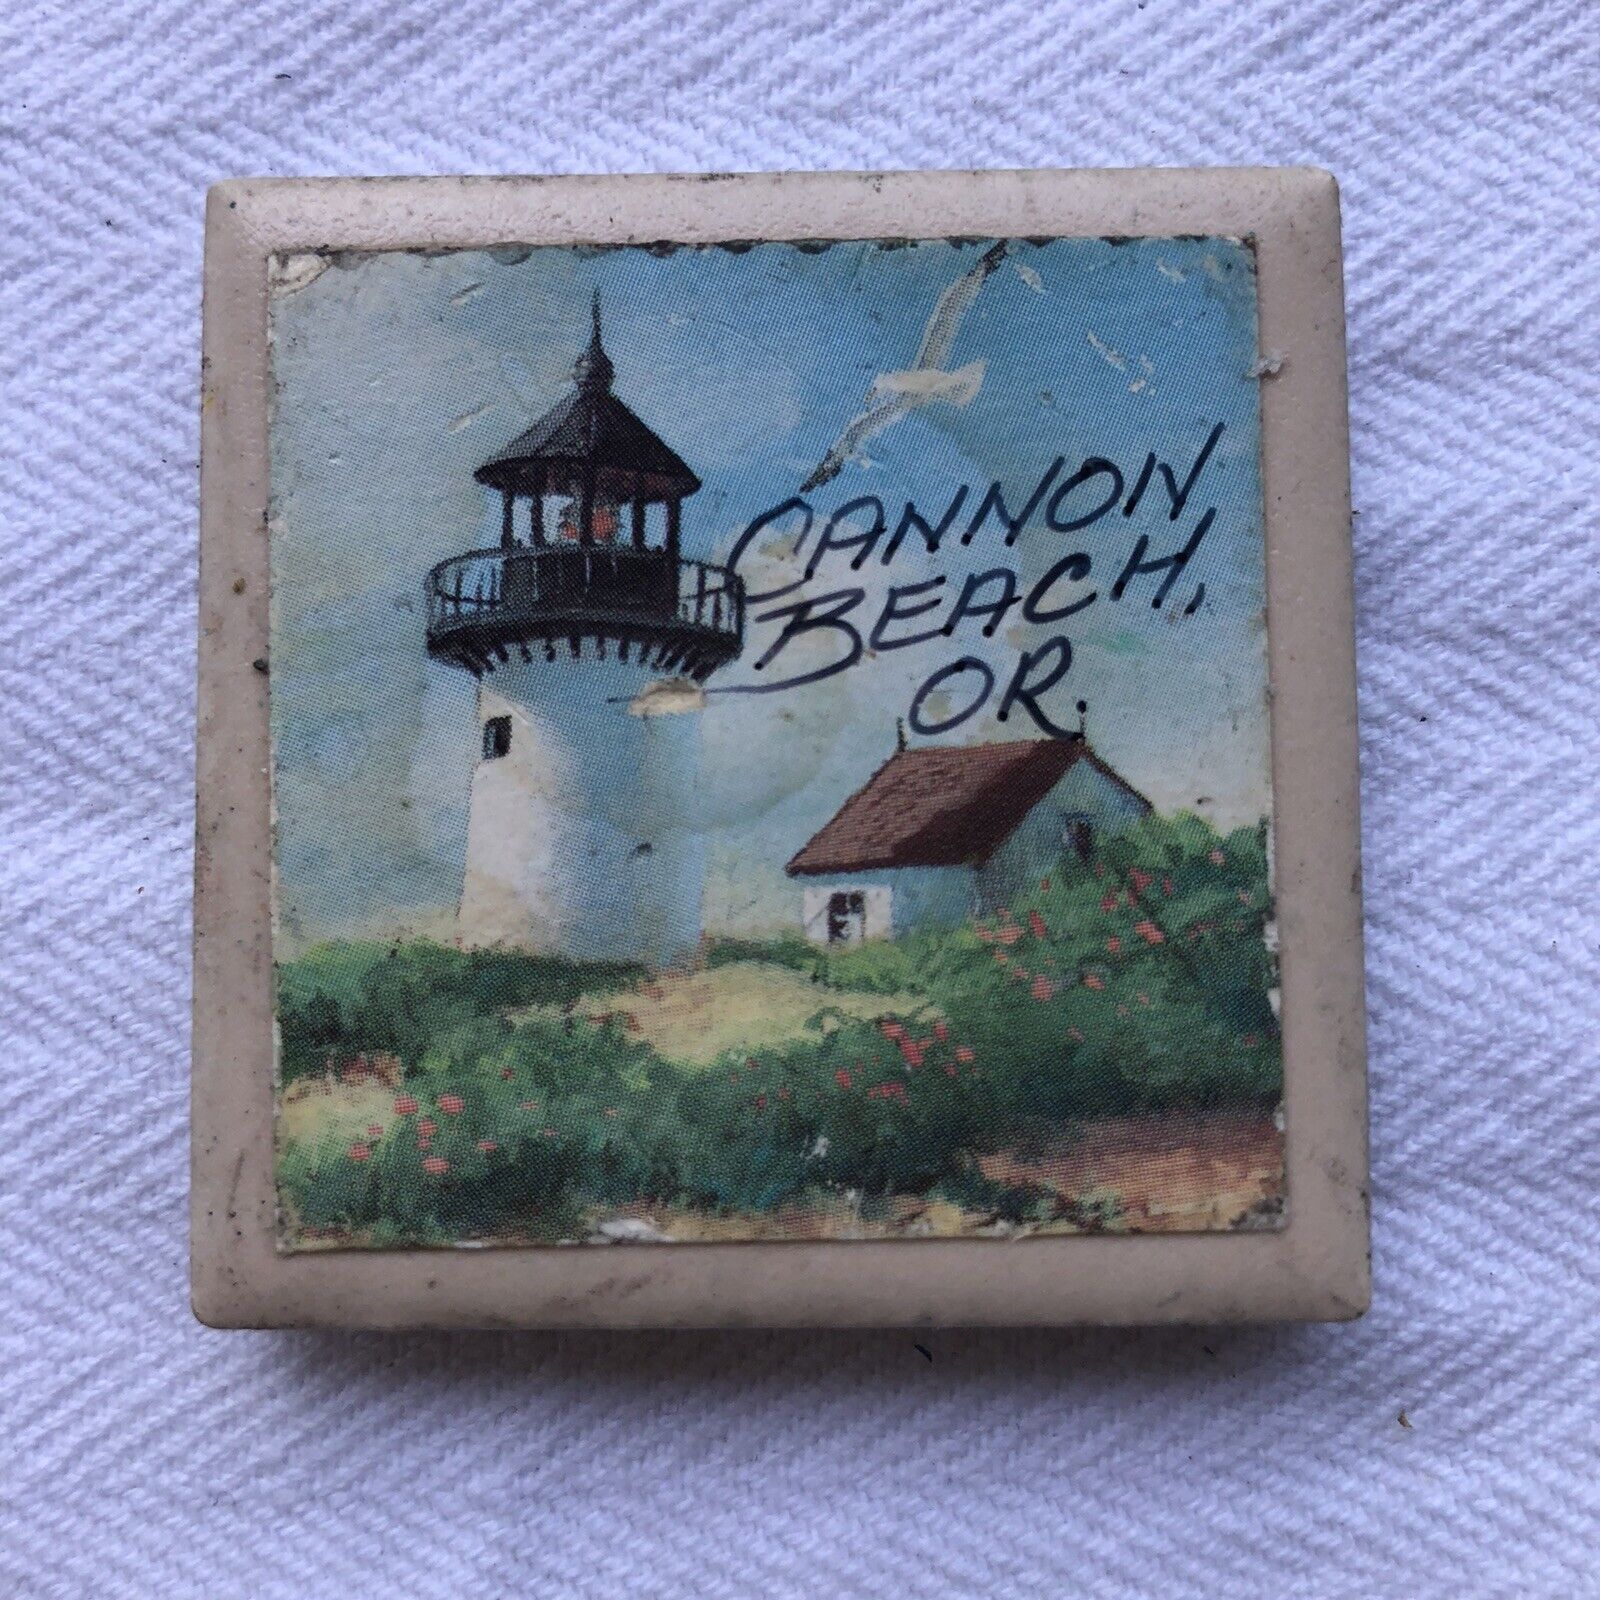 Cannon Beach Oregon Ceramic Tile Lighthouse Travel Souvenir Fridge Magnet